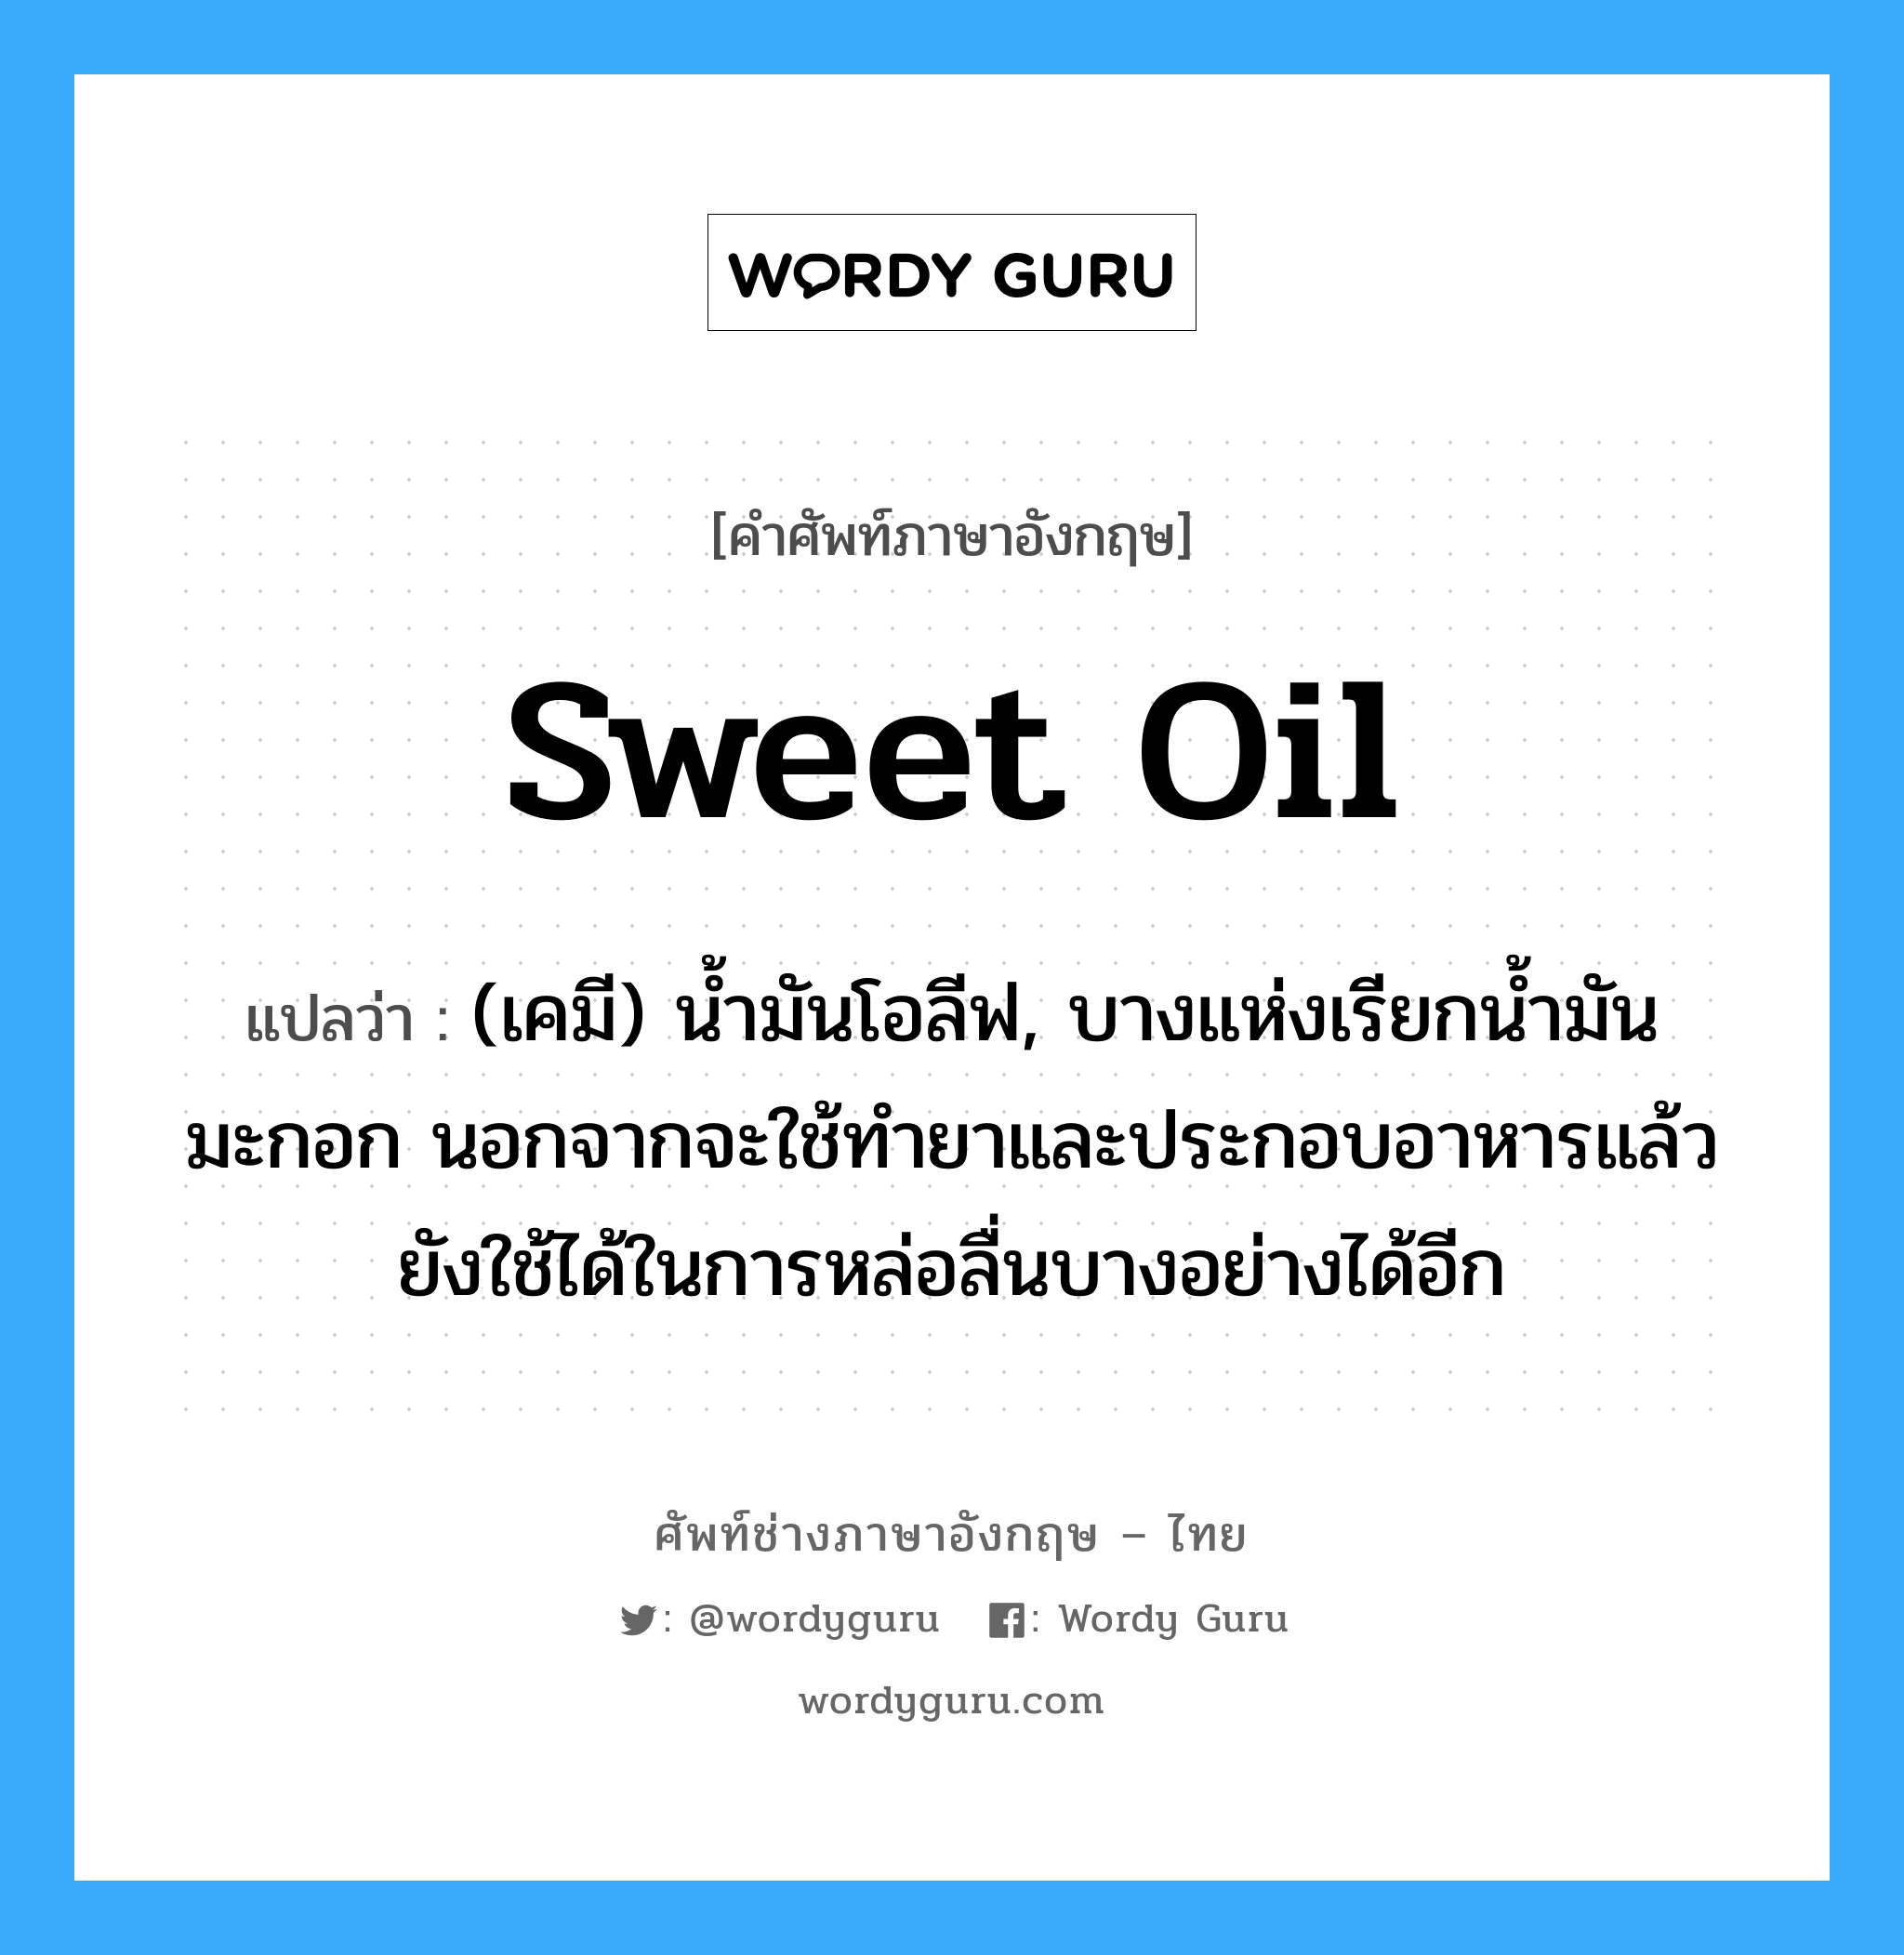 sweet oil แปลว่า?, คำศัพท์ช่างภาษาอังกฤษ - ไทย sweet oil คำศัพท์ภาษาอังกฤษ sweet oil แปลว่า (เคมี) น้ำมันโอลีฟ, บางแห่งเรียกน้ำมันมะกอก นอกจากจะใช้ทำยาและประกอบอาหารแล้ว ยังใช้ได้ในการหล่อลื่นบางอย่างได้อีก